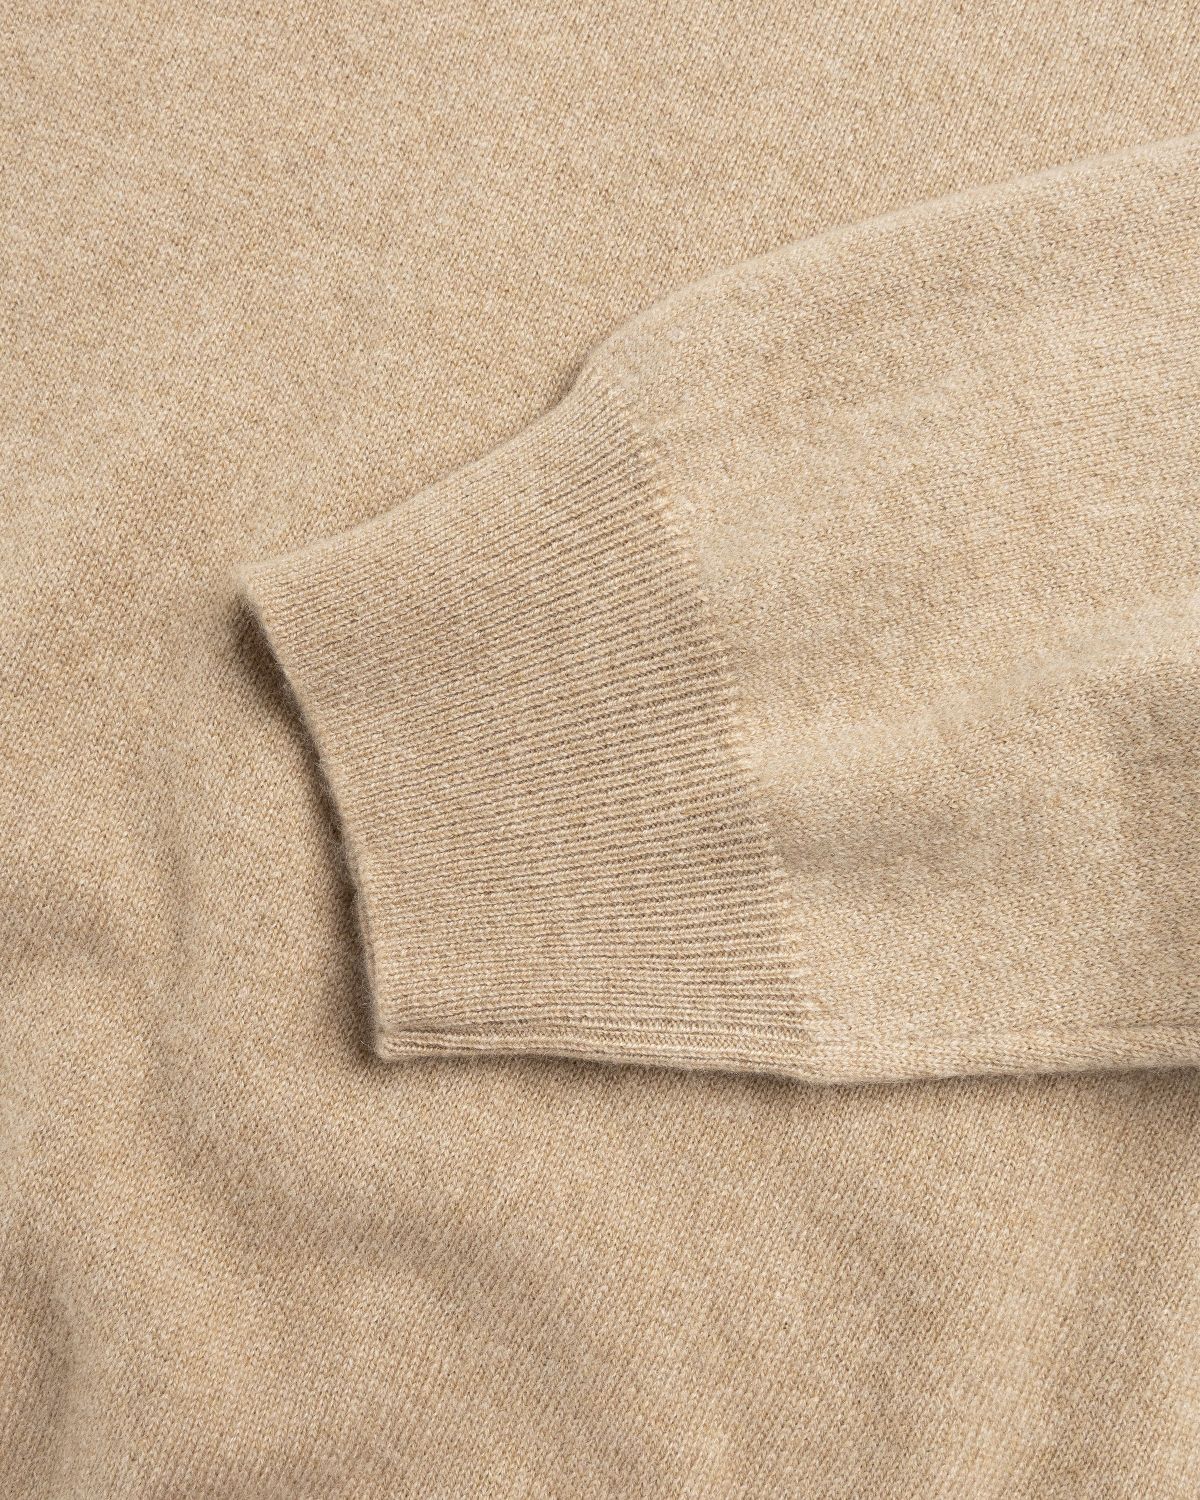 Highsnobiety HS05 – Cashmere Crew Sweater Beige - Knitwear - Beige - Image 7